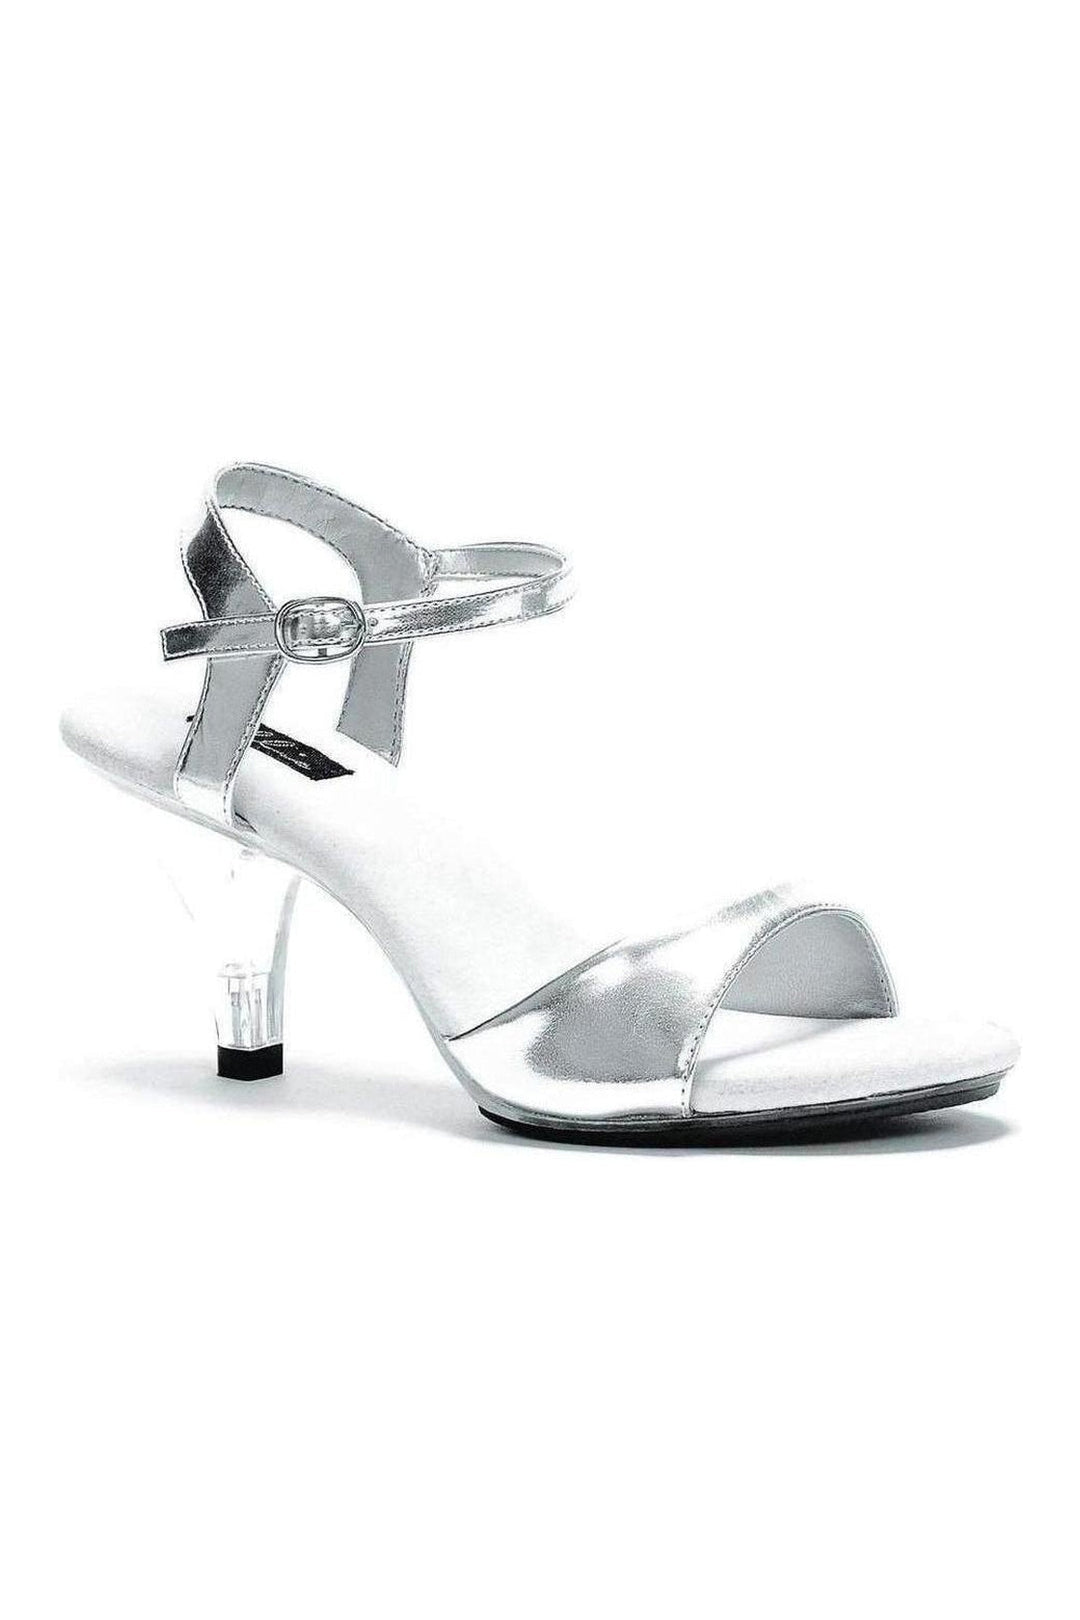 305-JULIET Sandal | Silver Faux Leather-Ellie Shoes-Silver-Sandals-SEXYSHOES.COM